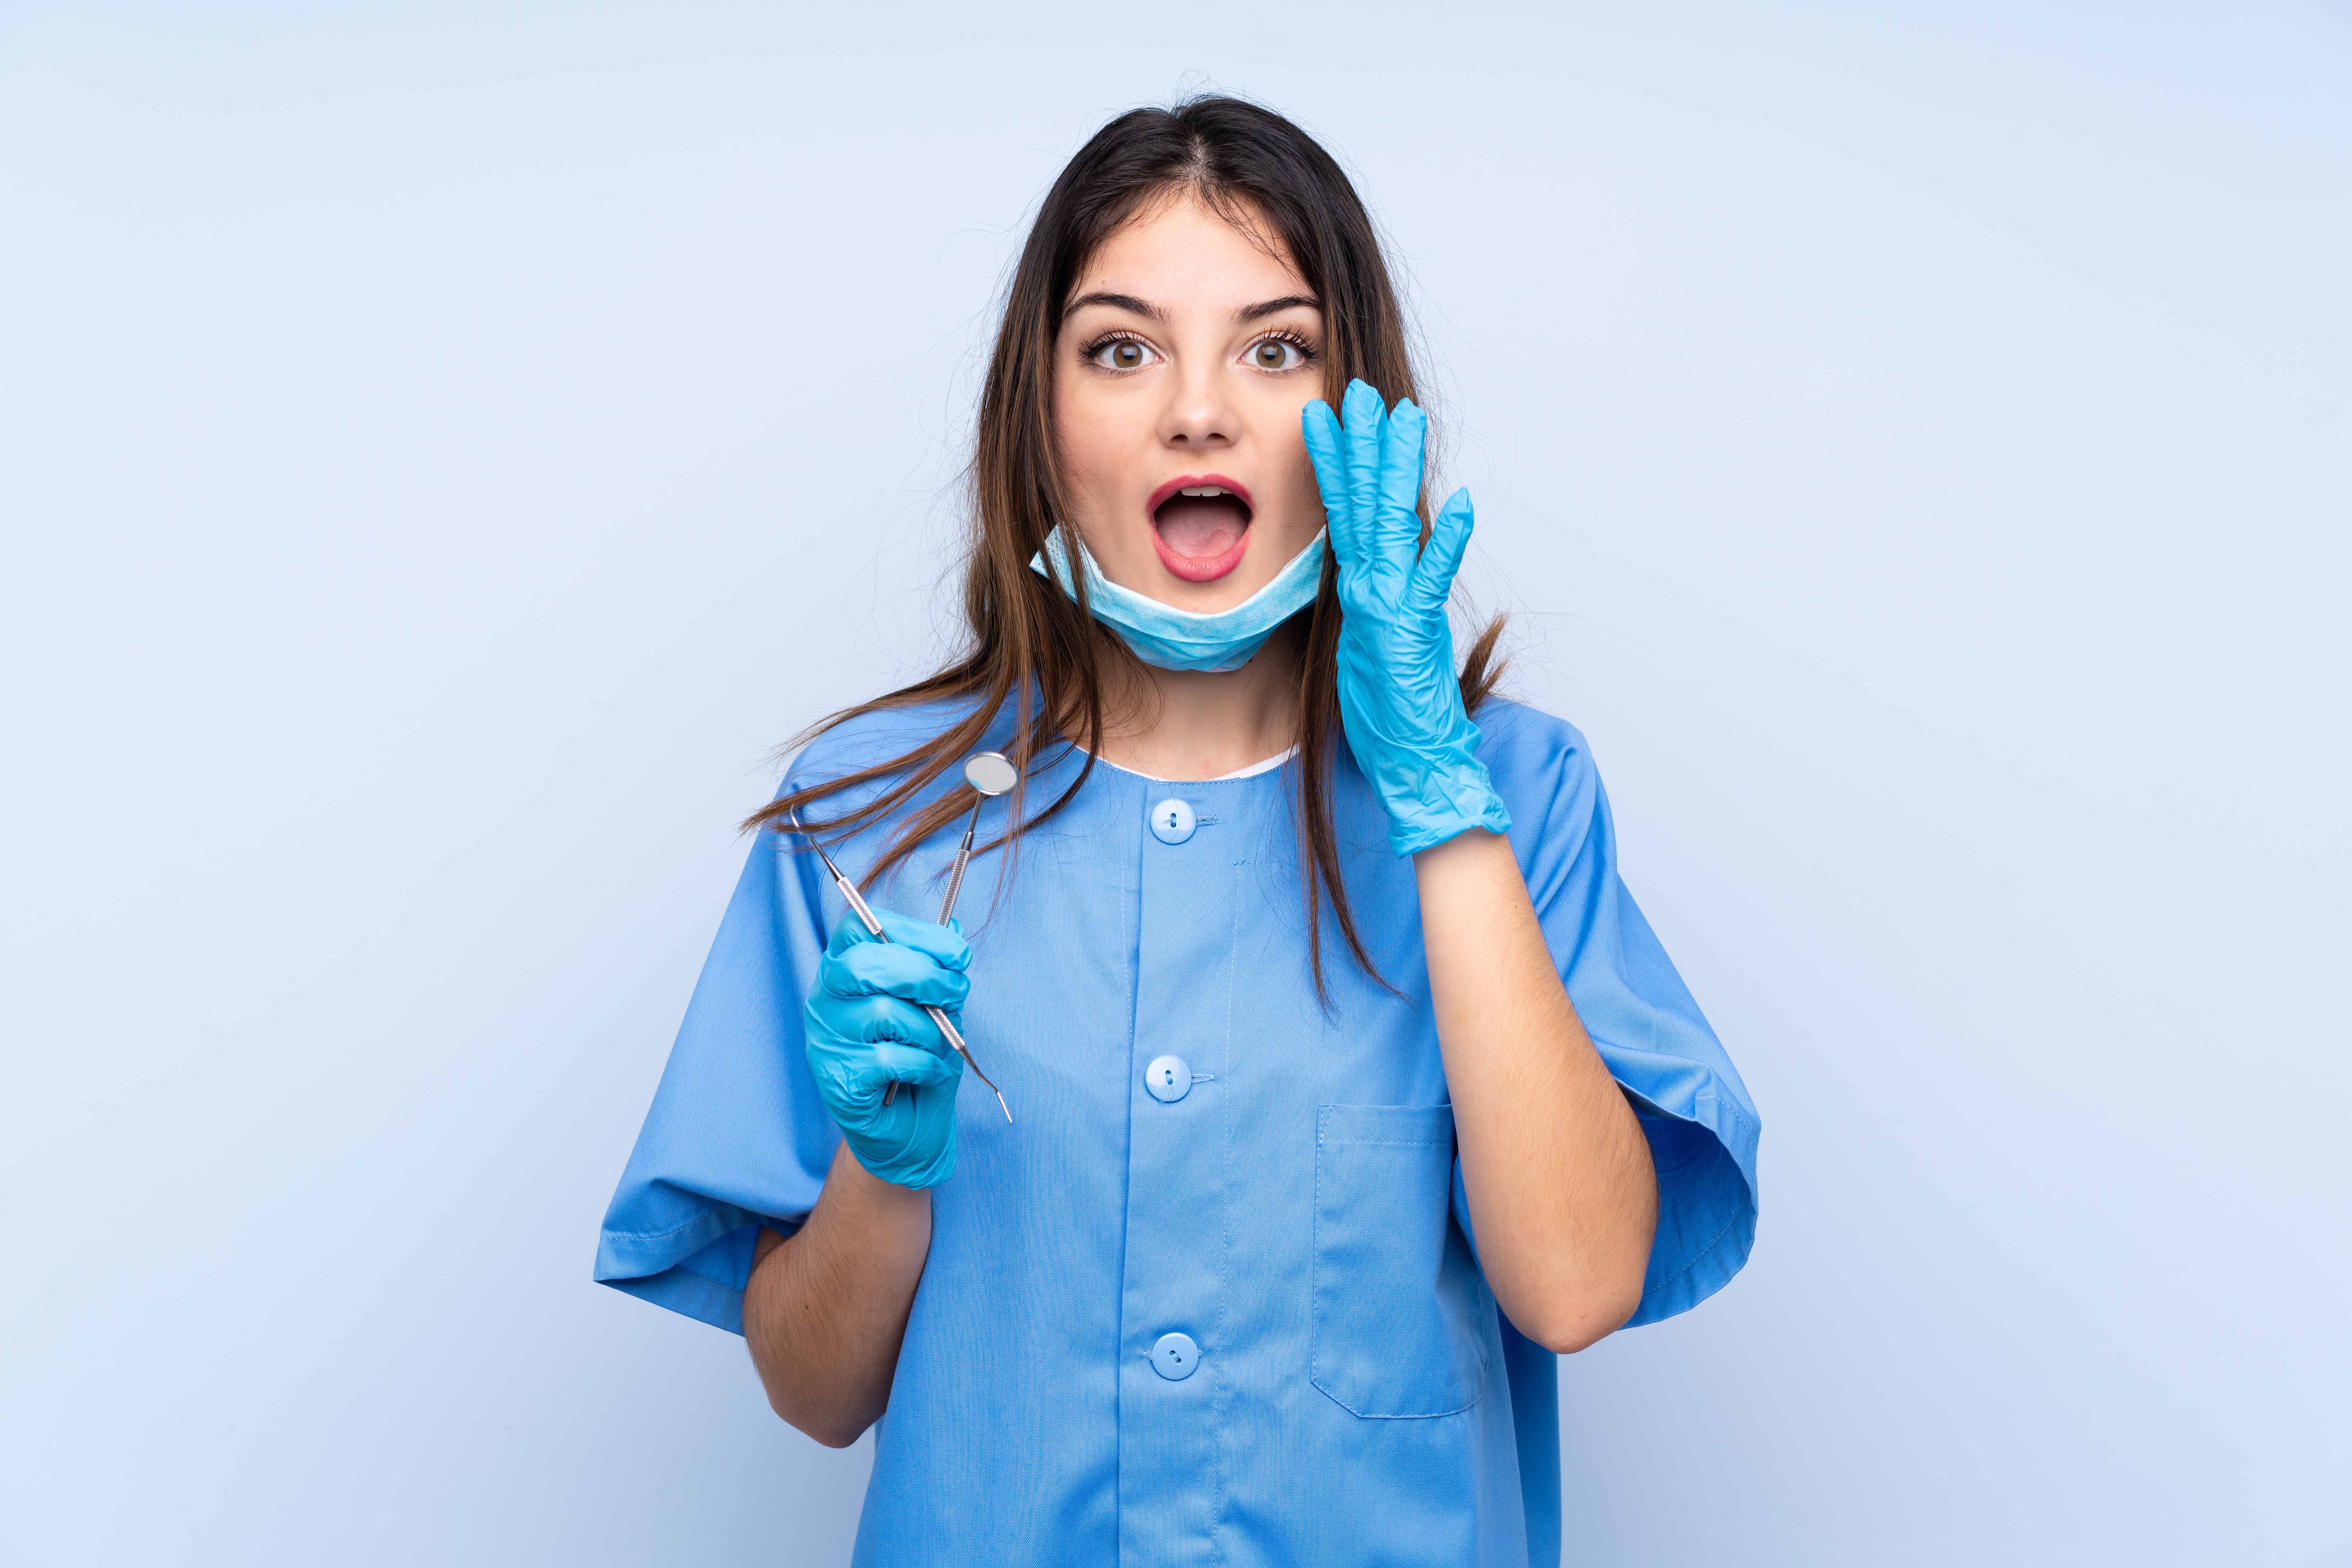 水色の白衣・手袋をした女性歯科助手が、右手に手に歯の治療器具を持ち、左手を口元に当てて呼びかけている。